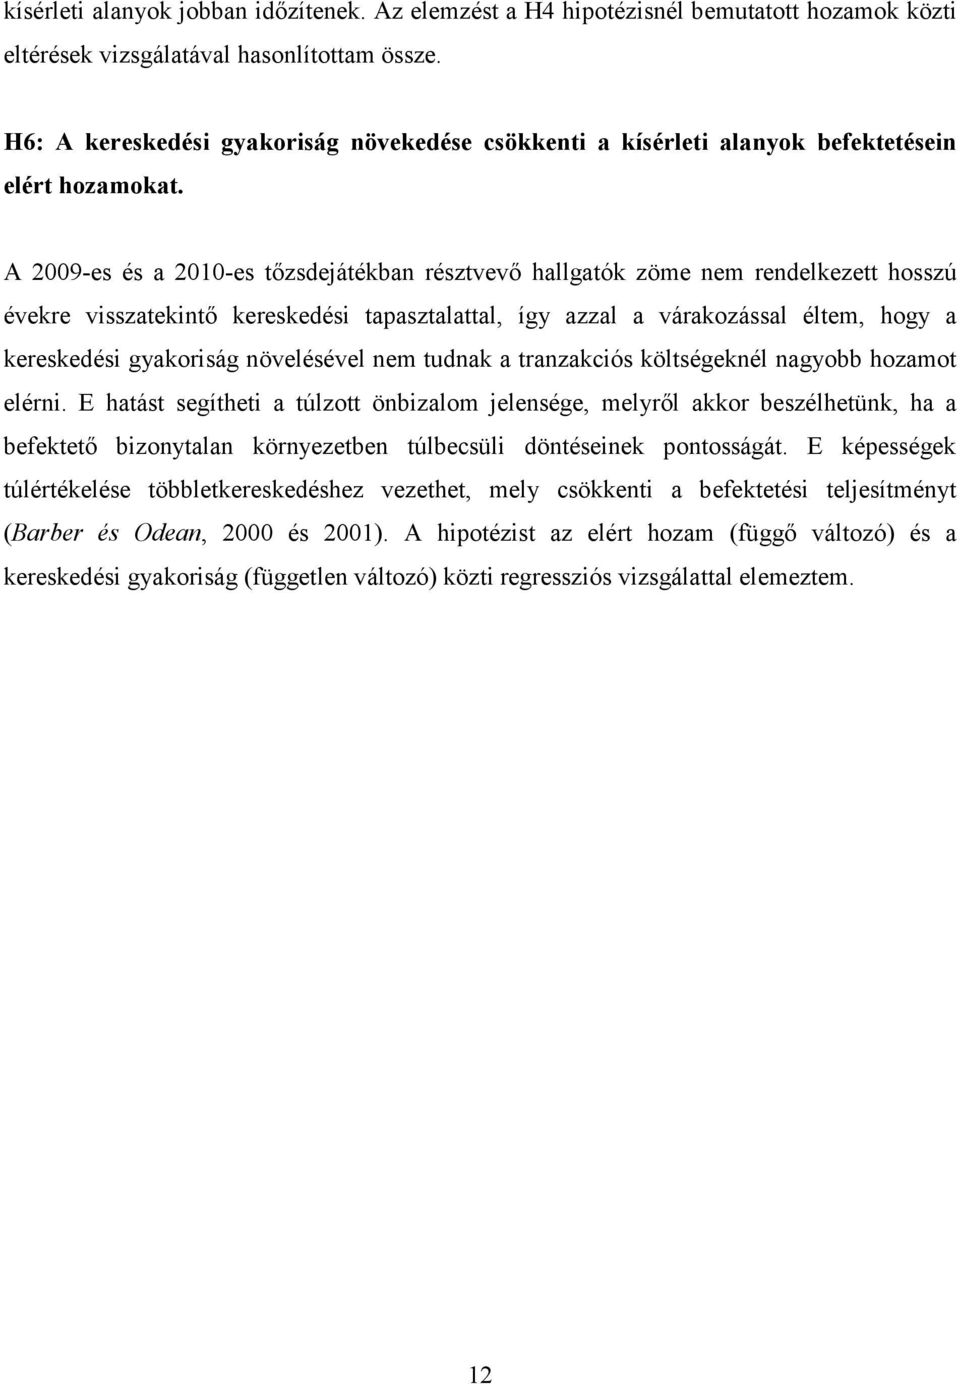 A 2009-es és a 2010-es tızsdejátékban résztvevı hallgatók zöme nem rendelkezett hosszú évekre visszatekintı kereskedési tapasztalattal, így azzal a várakozással éltem, hogy a kereskedési gyakoriság